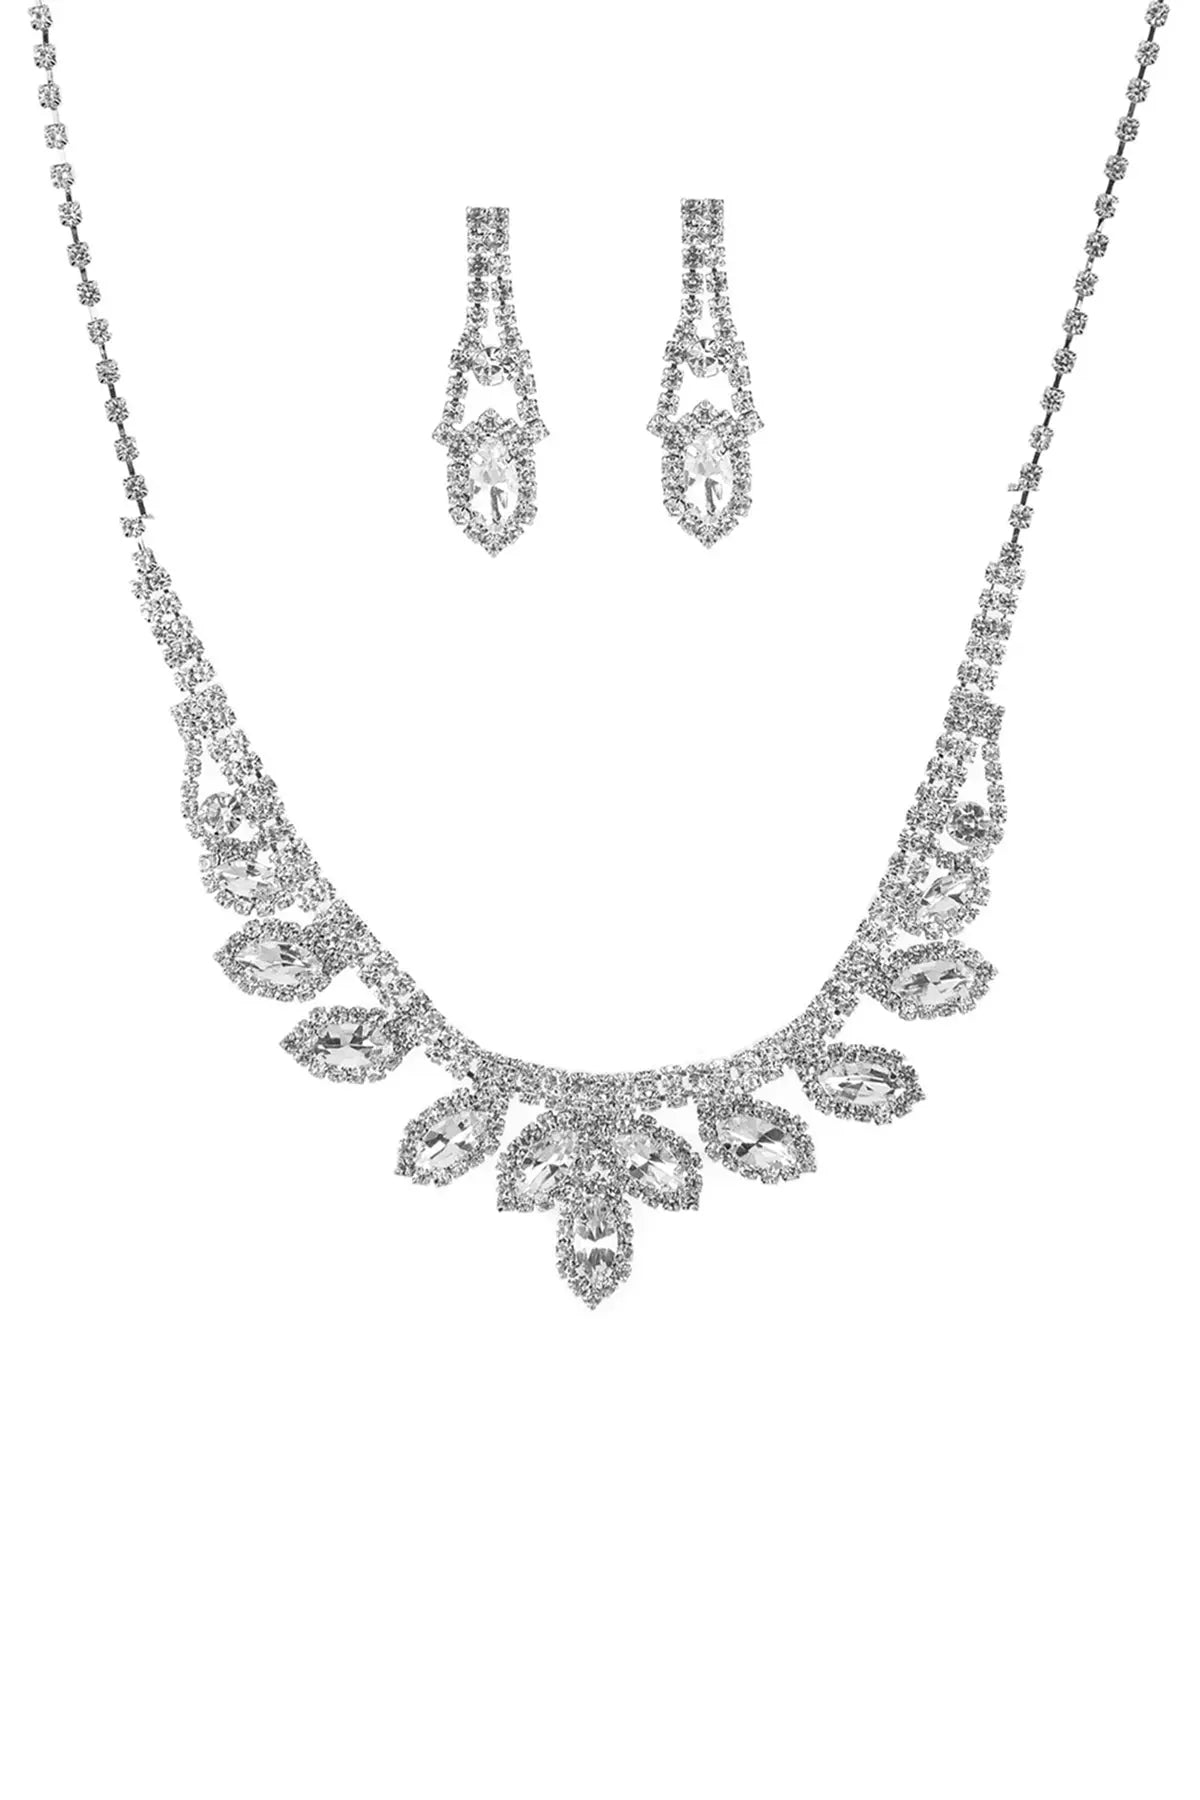 Rhinestone Marquise Wedding Necklace And Earring Set Sunny EvE Fashion